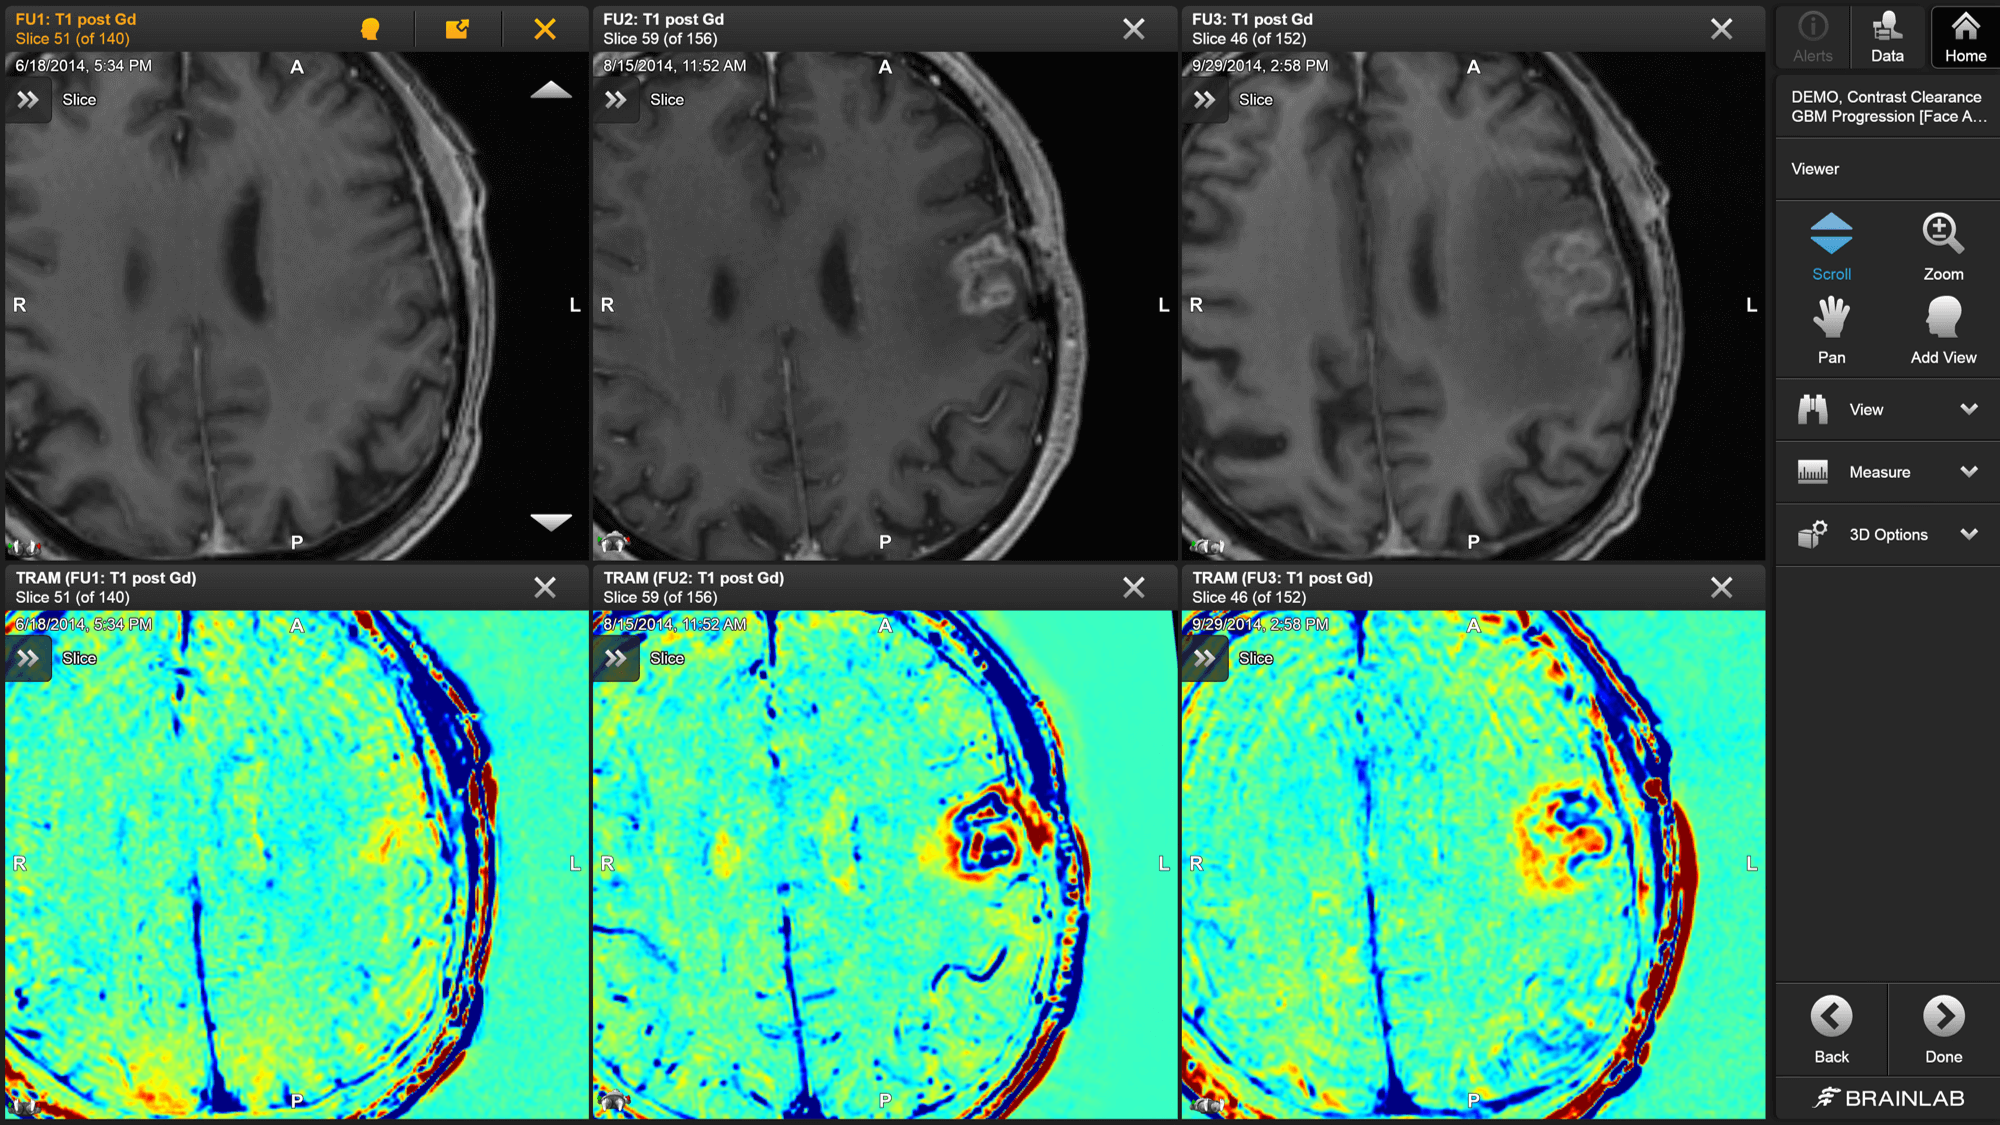 Trois images IRM en noir et blanc d’un cerveau prises à trois intervalles différents au-dessus des trois images Contrast Clearance Analysis correspondantes qui montrent l’évolution après ablation des tumeurs cérébrales d’un patient.